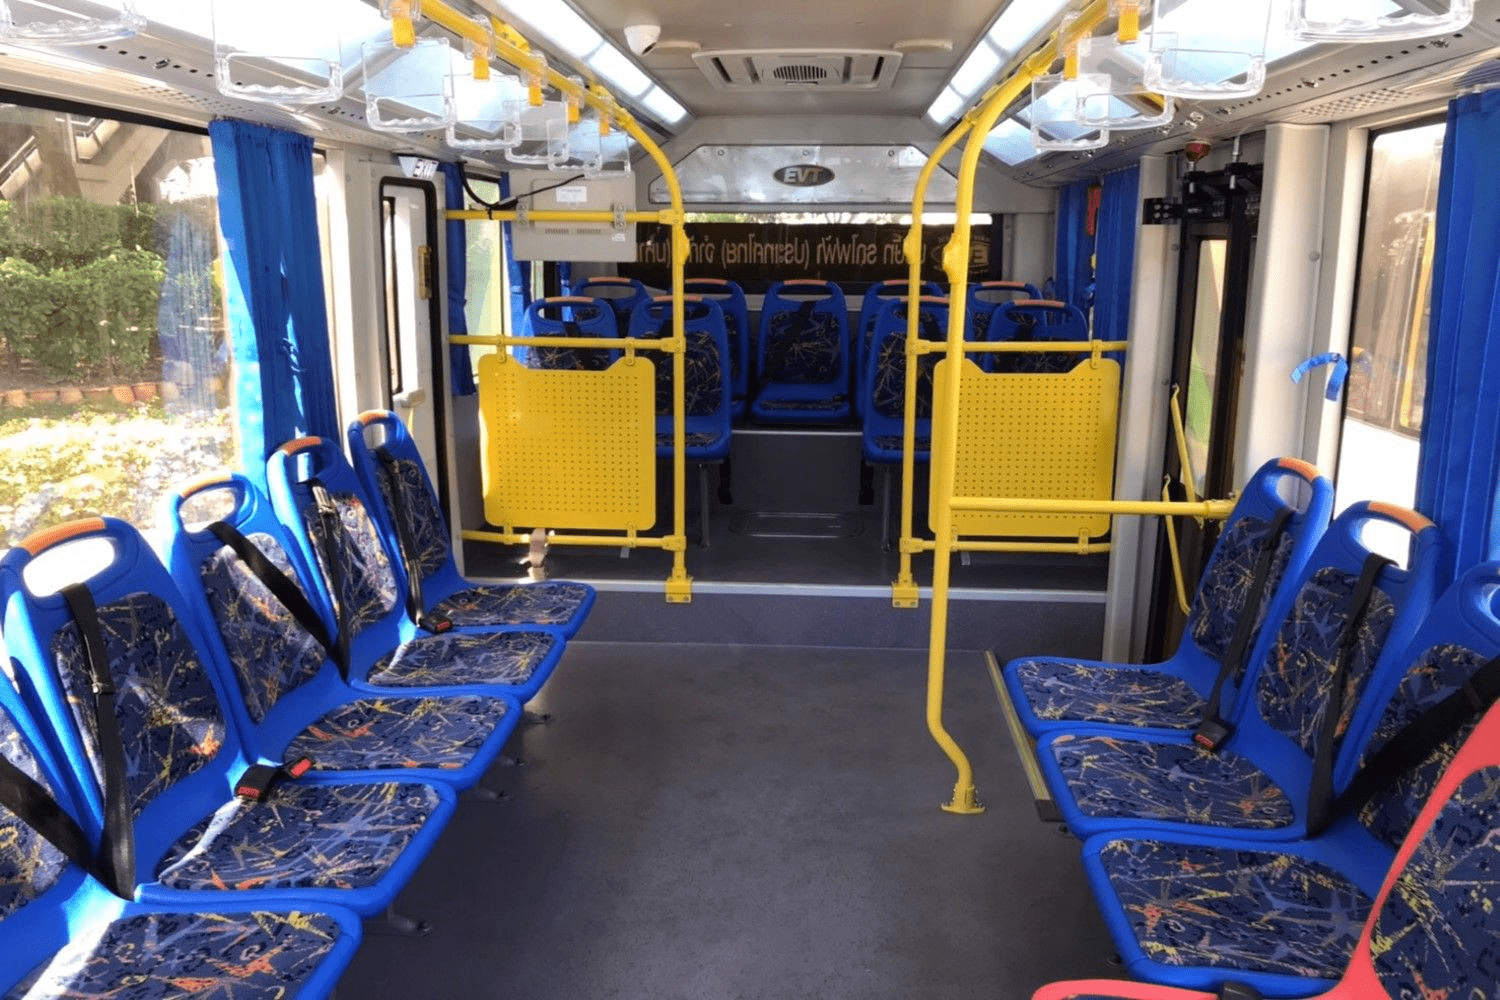 electric bus interior